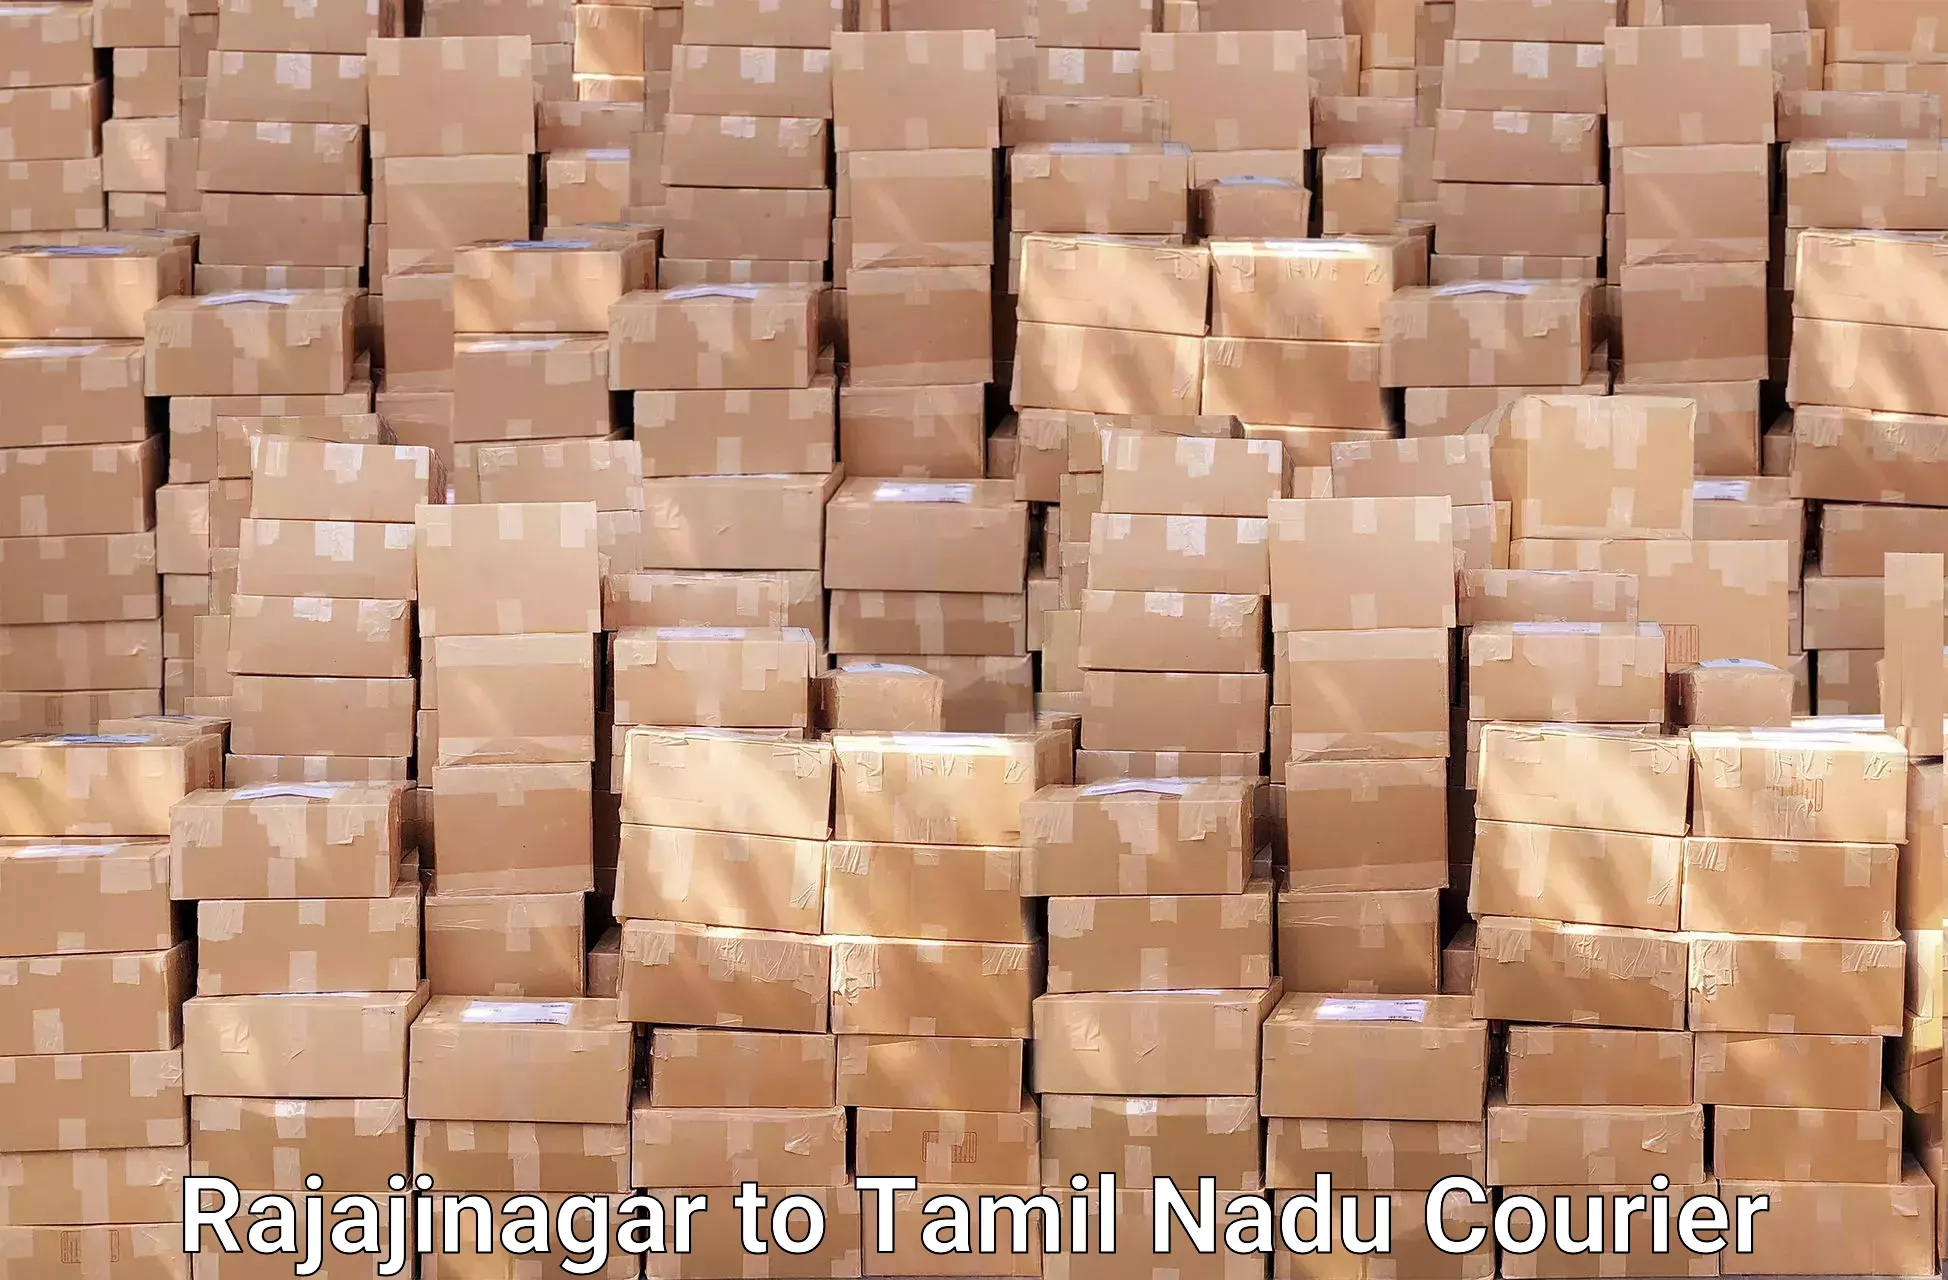 Furniture transport services Rajajinagar to Tamil Nadu